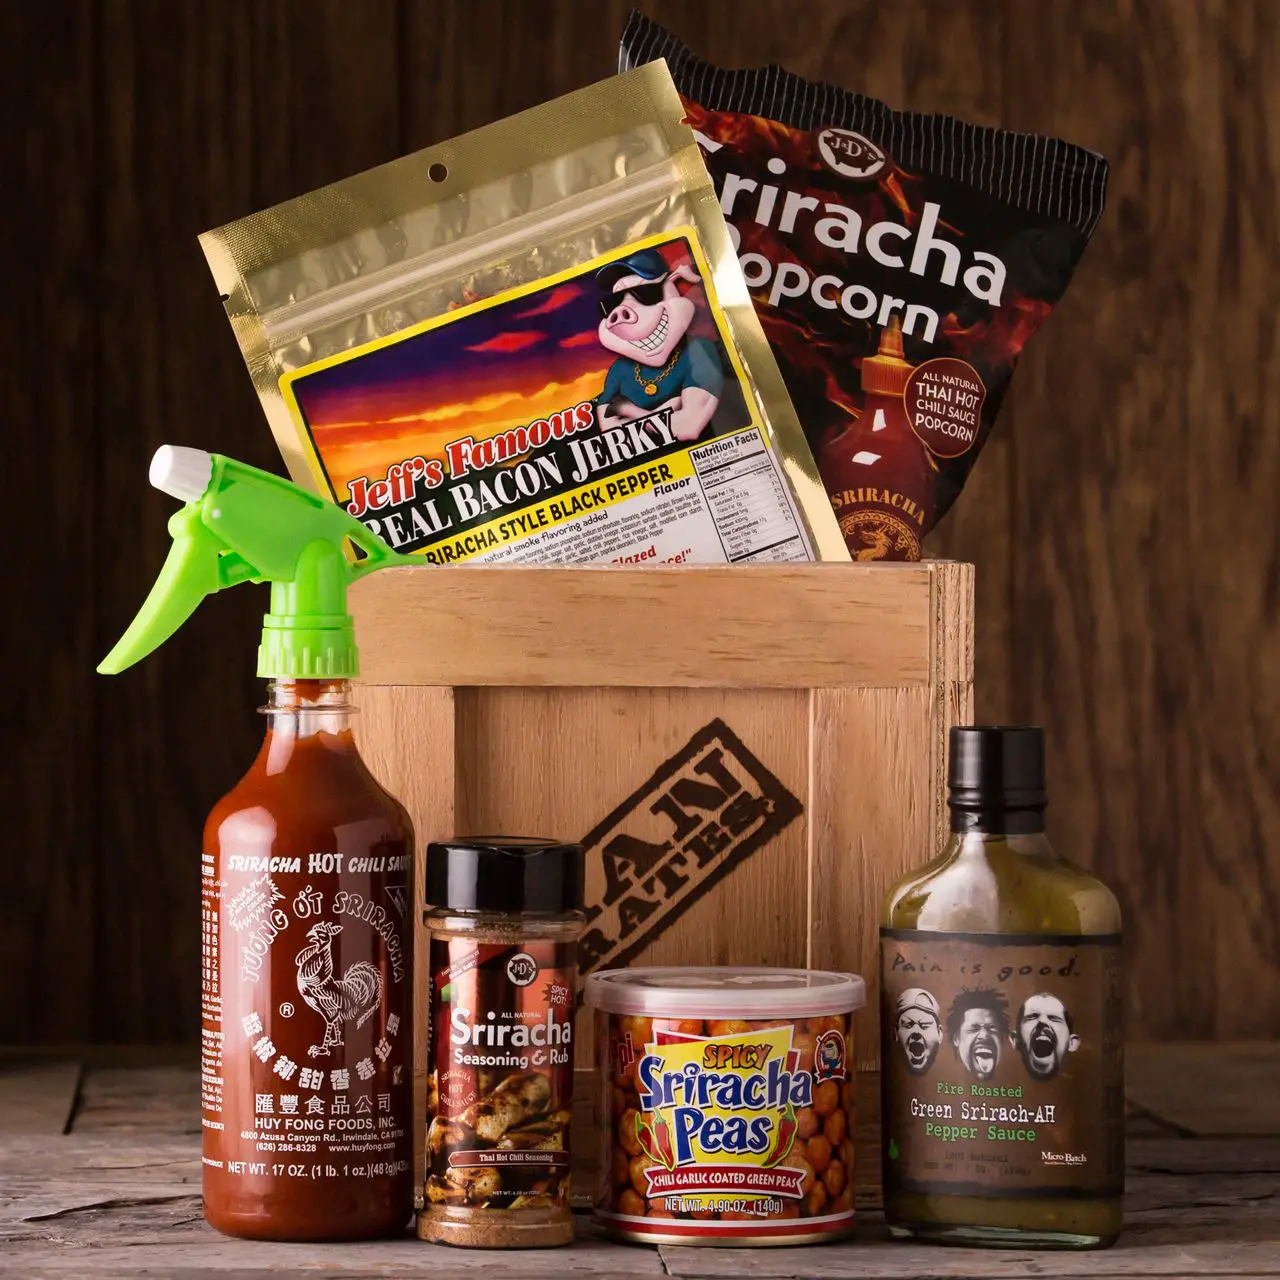 The Sriracha Crate